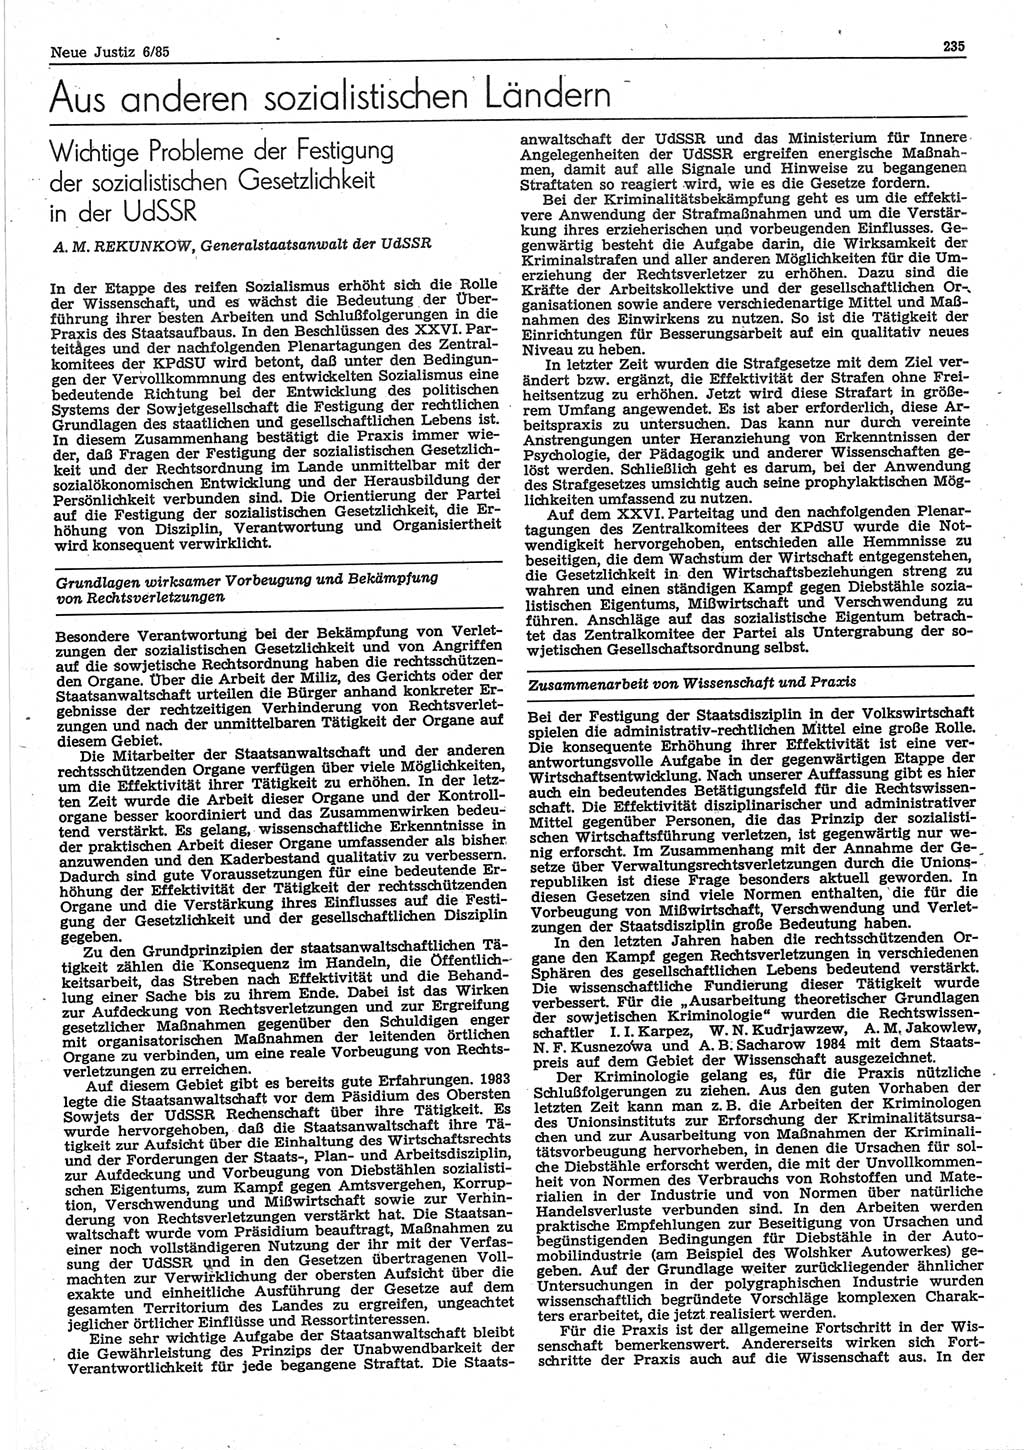 Neue Justiz (NJ), Zeitschrift für sozialistisches Recht und Gesetzlichkeit [Deutsche Demokratische Republik (DDR)], 39. Jahrgang 1985, Seite 235 (NJ DDR 1985, S. 235)